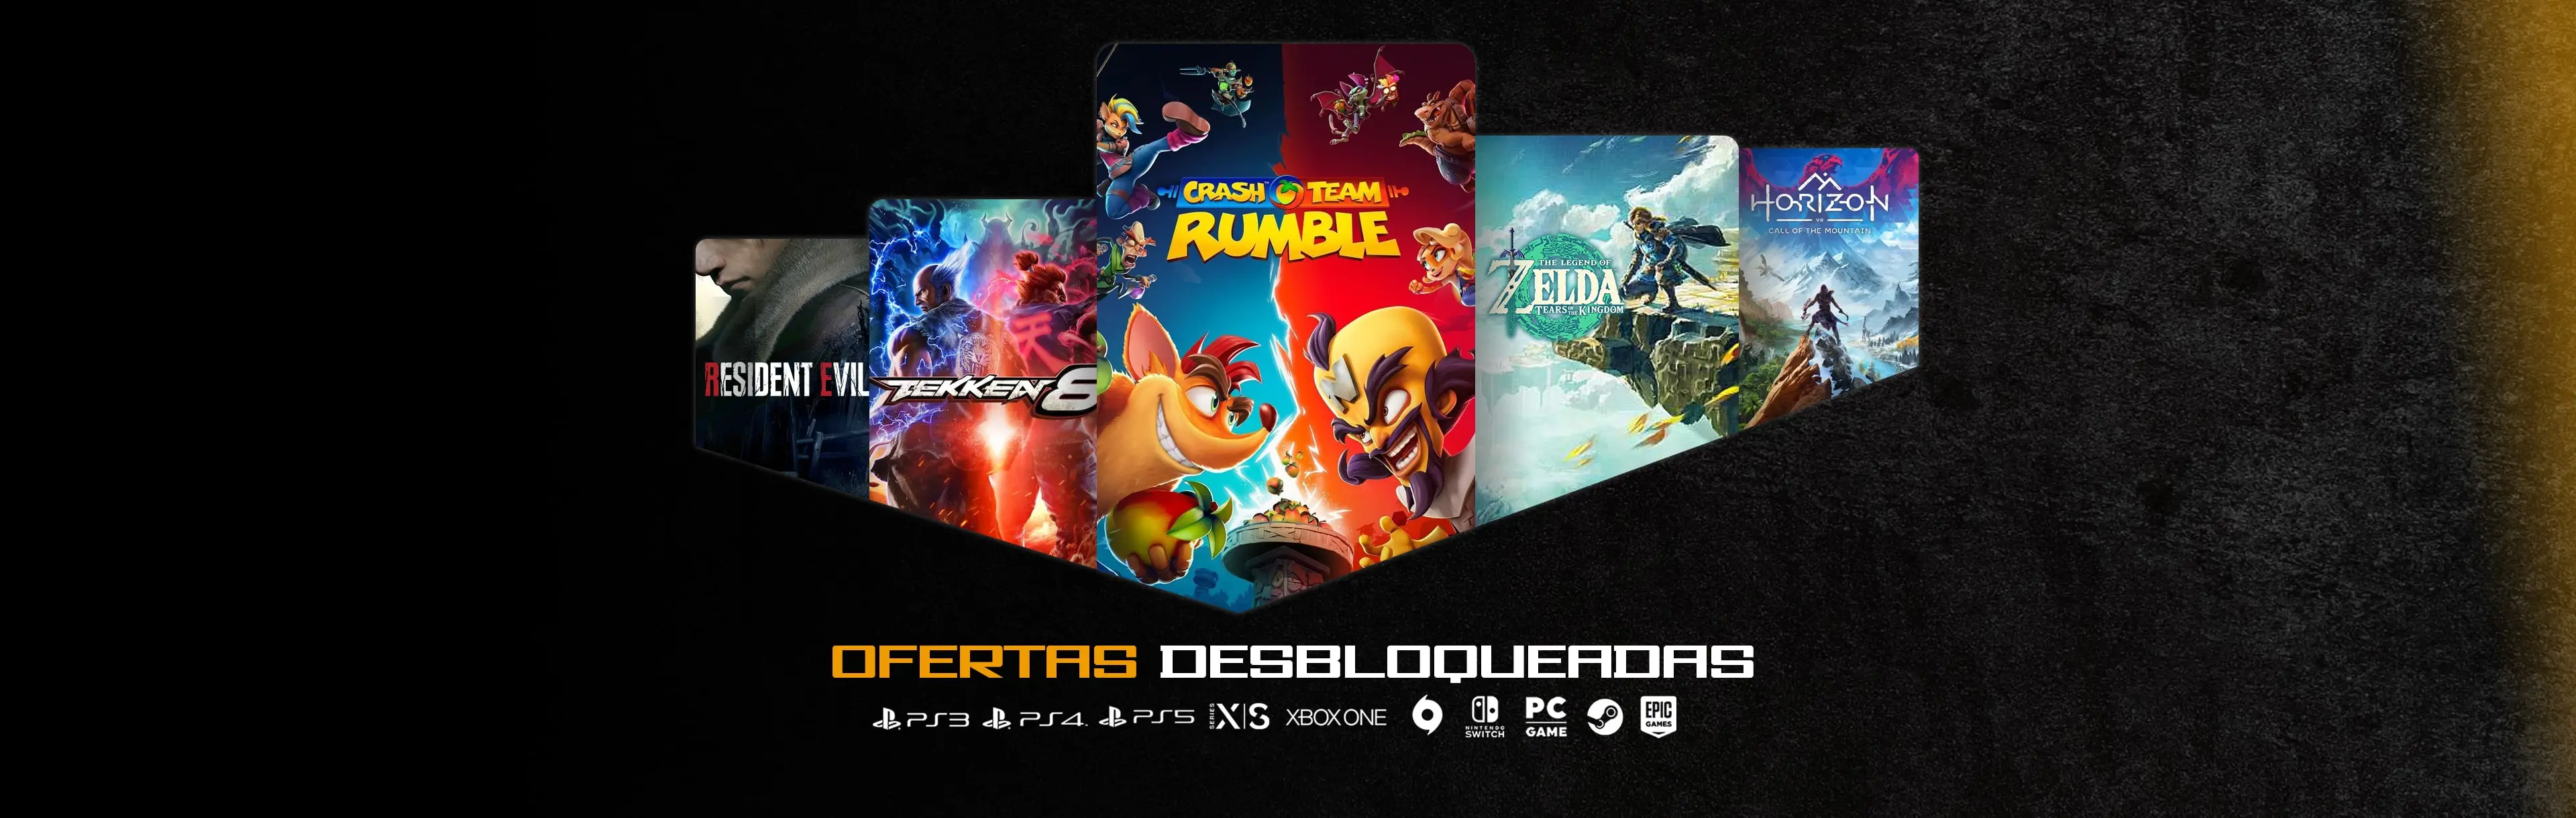 Juegos Digitales Brasil  Venta de juegos Digitales PS3 PS4 Ofertas